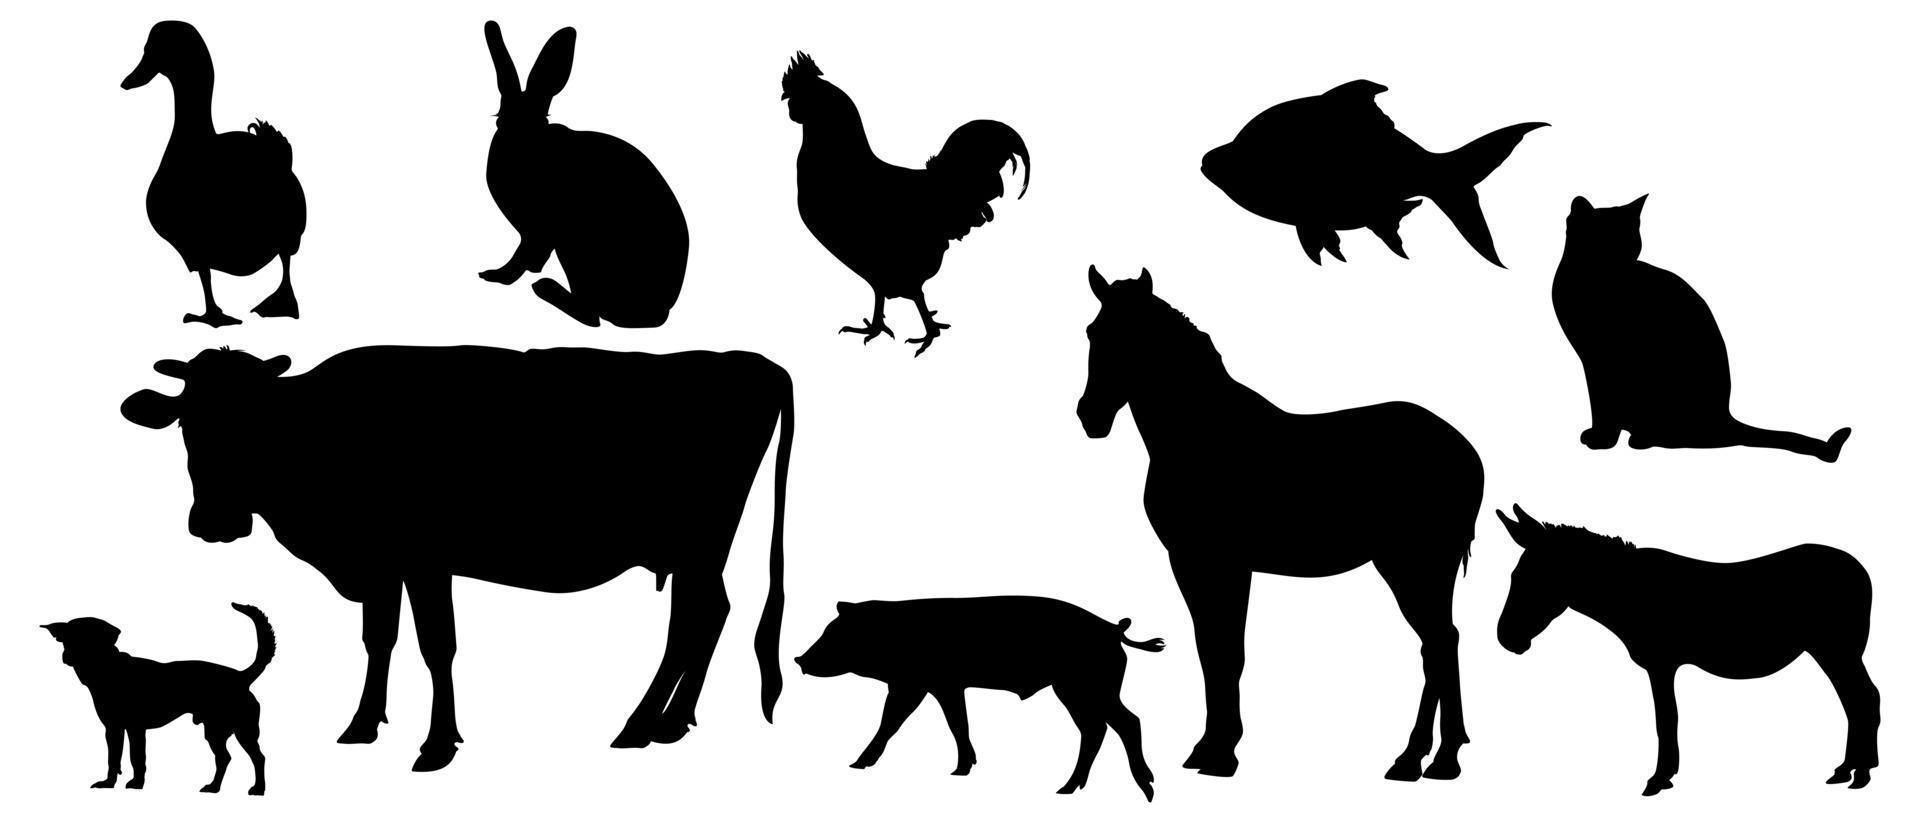 Reihe von Nutztieren - Silhouetten von Haustieren - Silhouetten von Tieren vektor